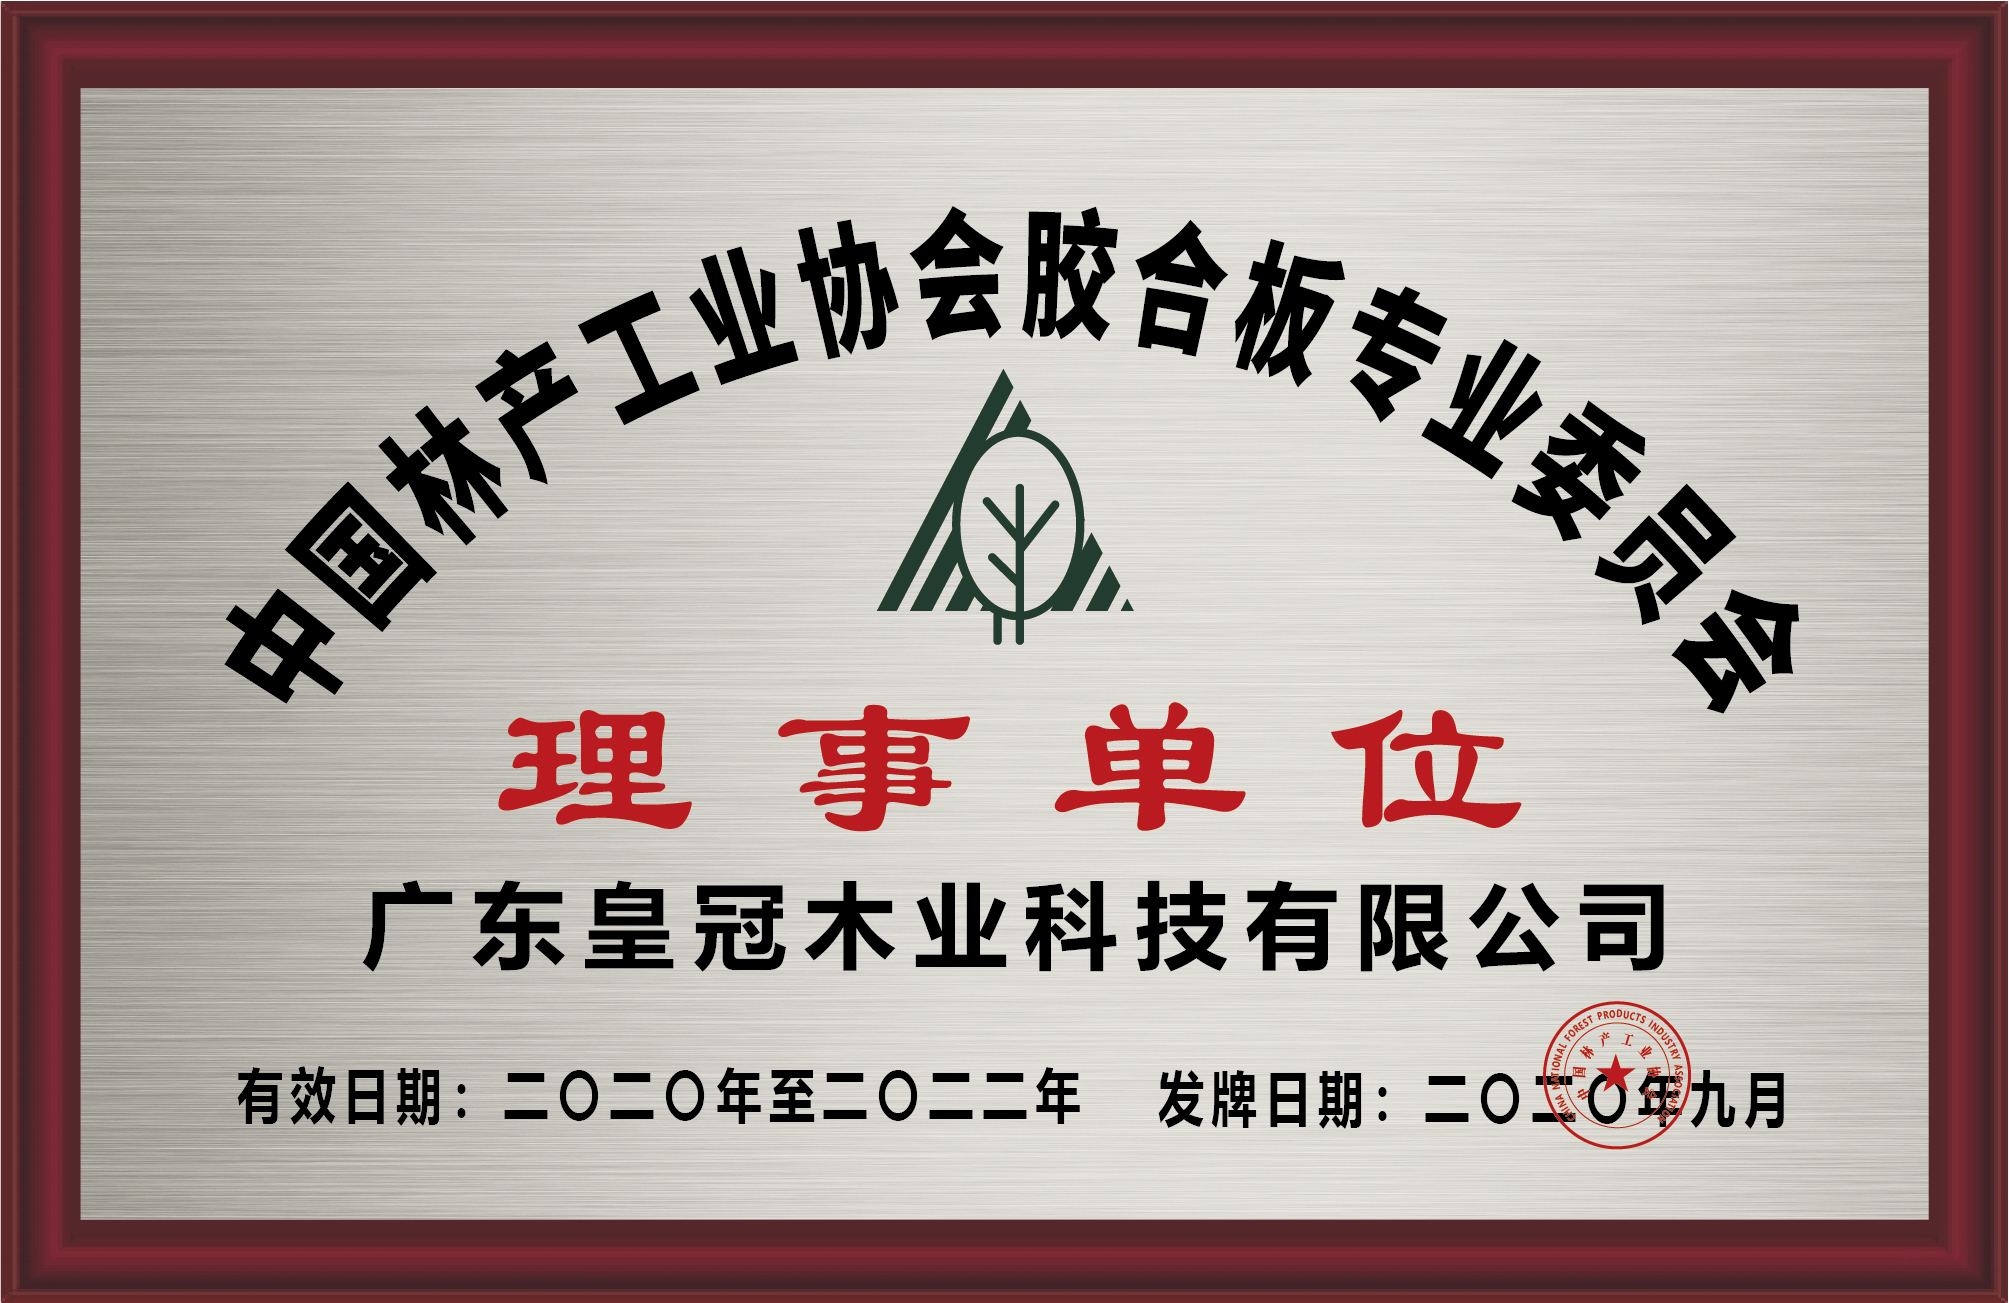 中国林产工业协会胶合板专业委员会理事单位